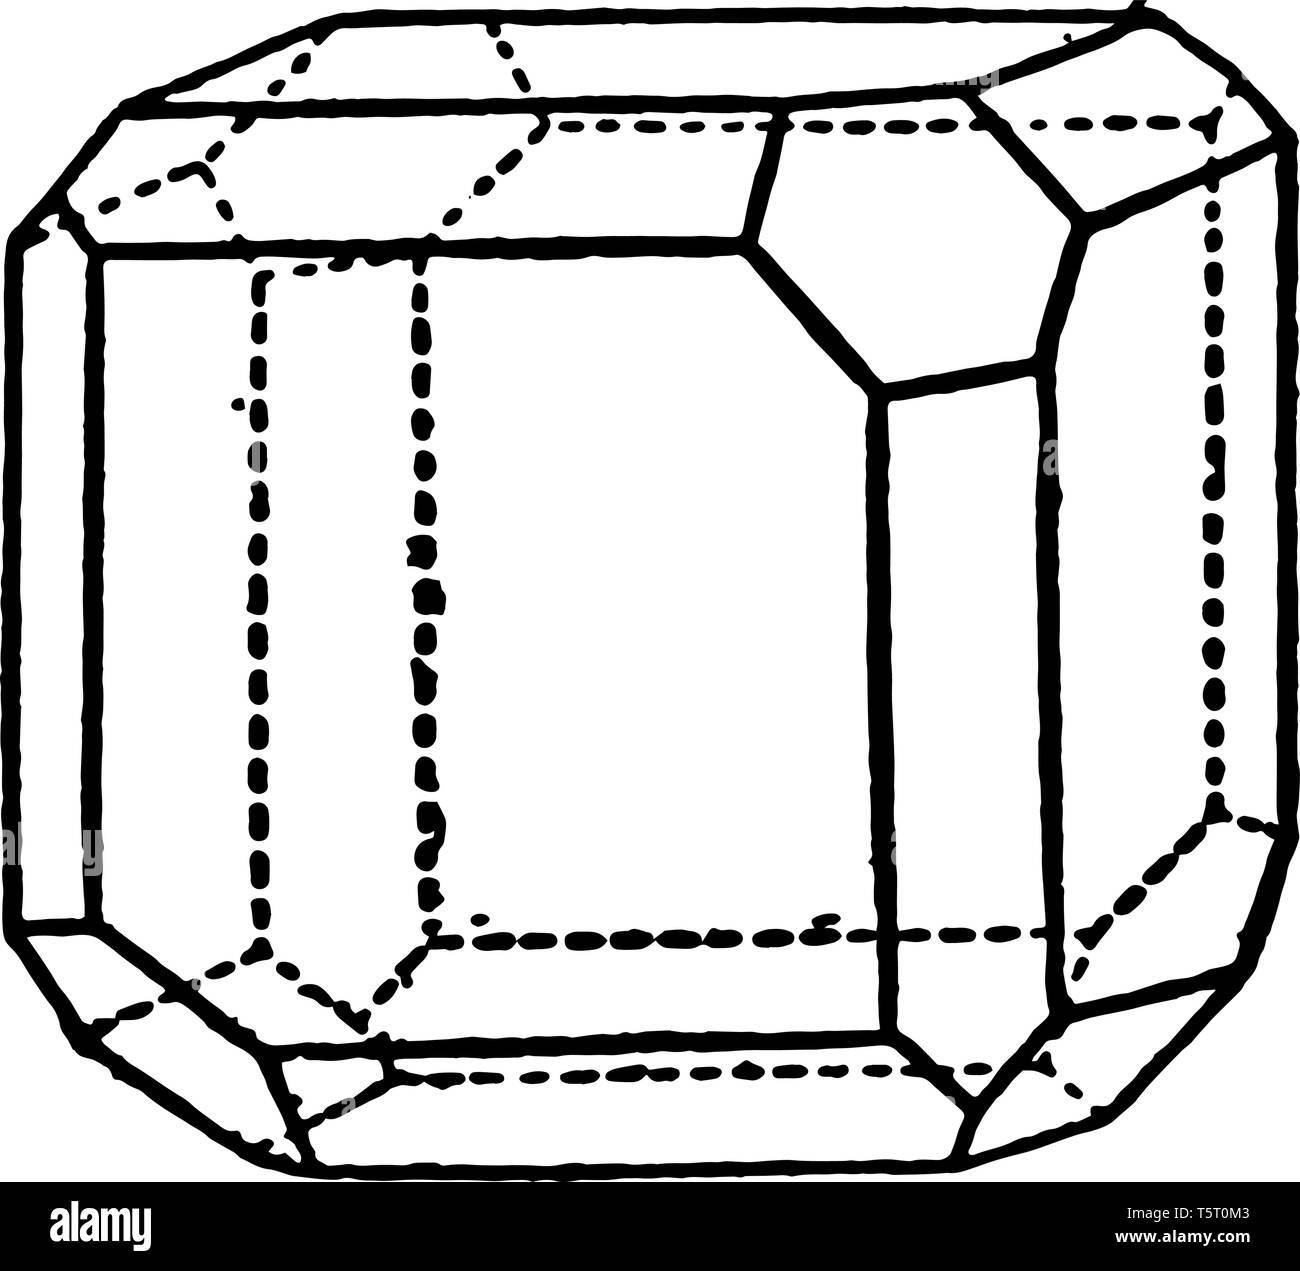 L'exemple de combinaison de tétraèdre, Cubeand dodécaèdre rhombique. Coins  de l'hexagone, fait vintage dessin ou gravure illustration Image  Vectorielle Stock - Alamy